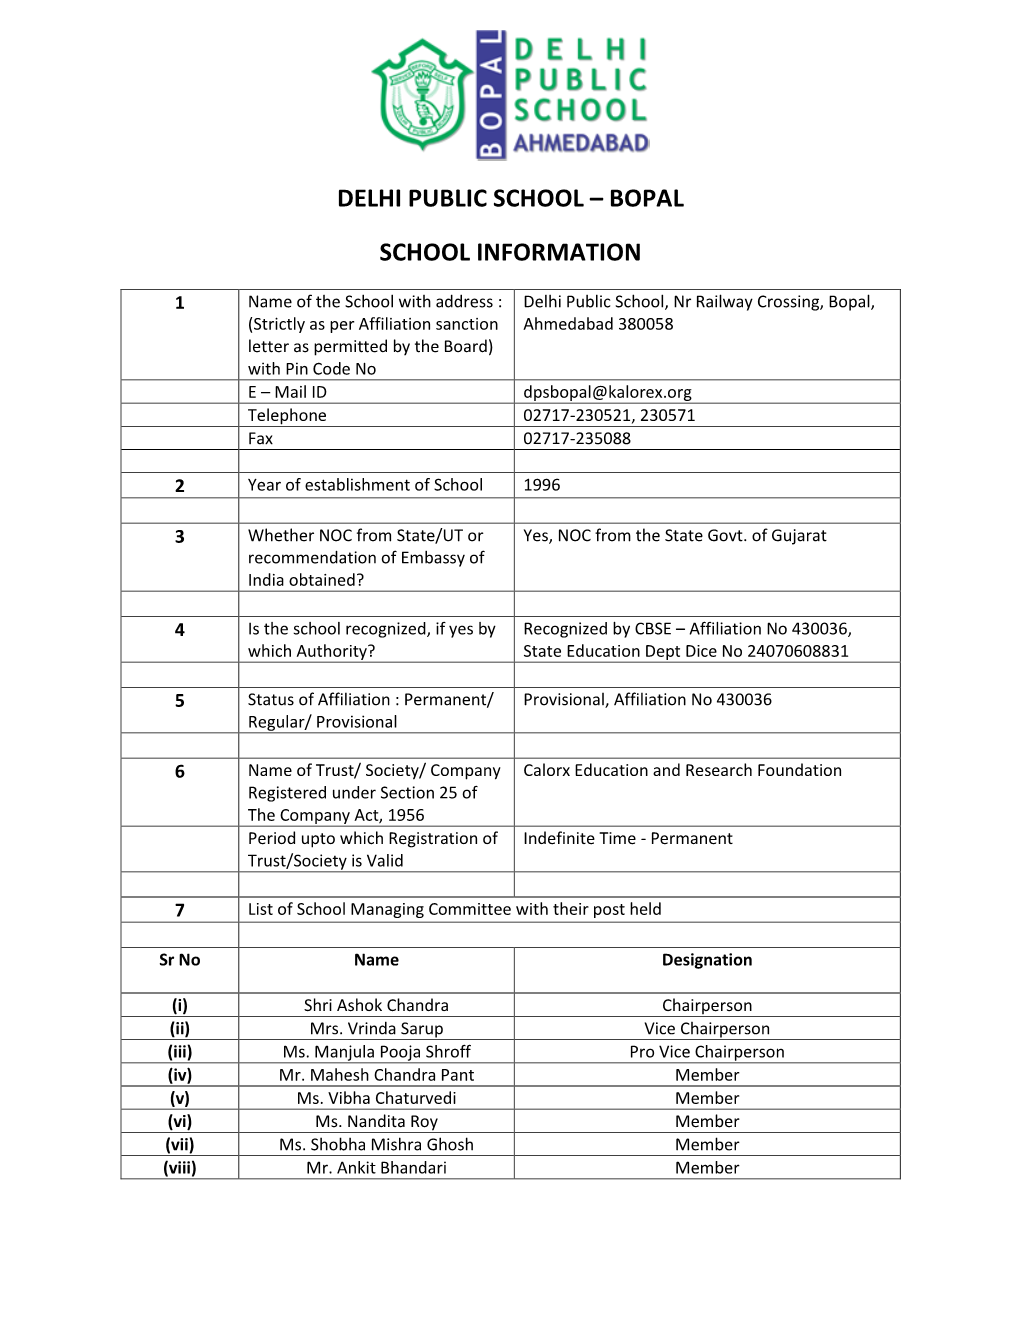 Bopal School Information